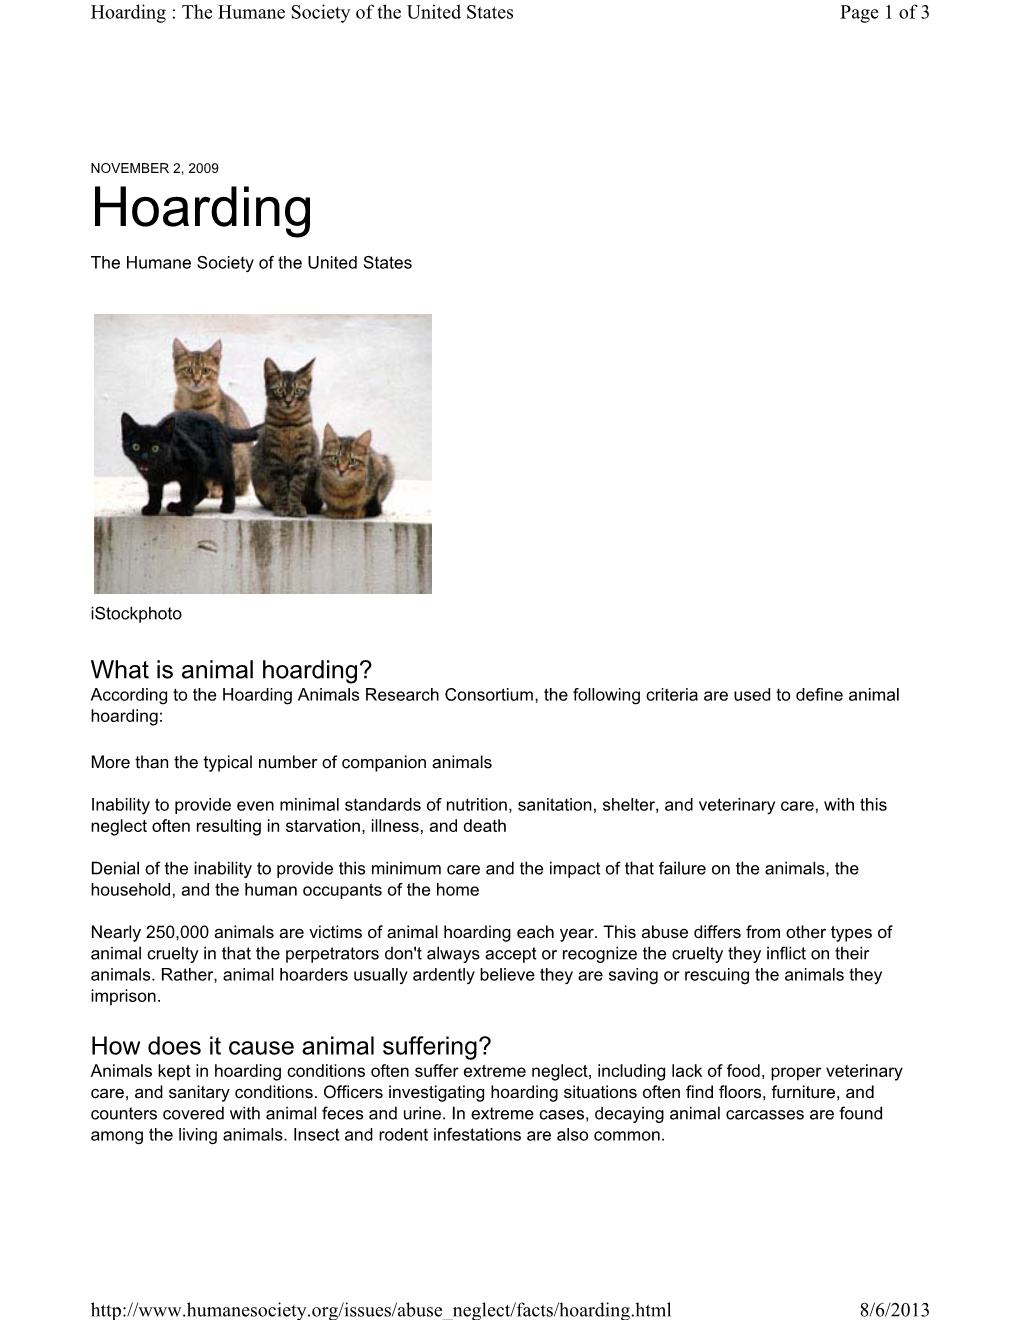 Animal Hoarding Fact Sheet